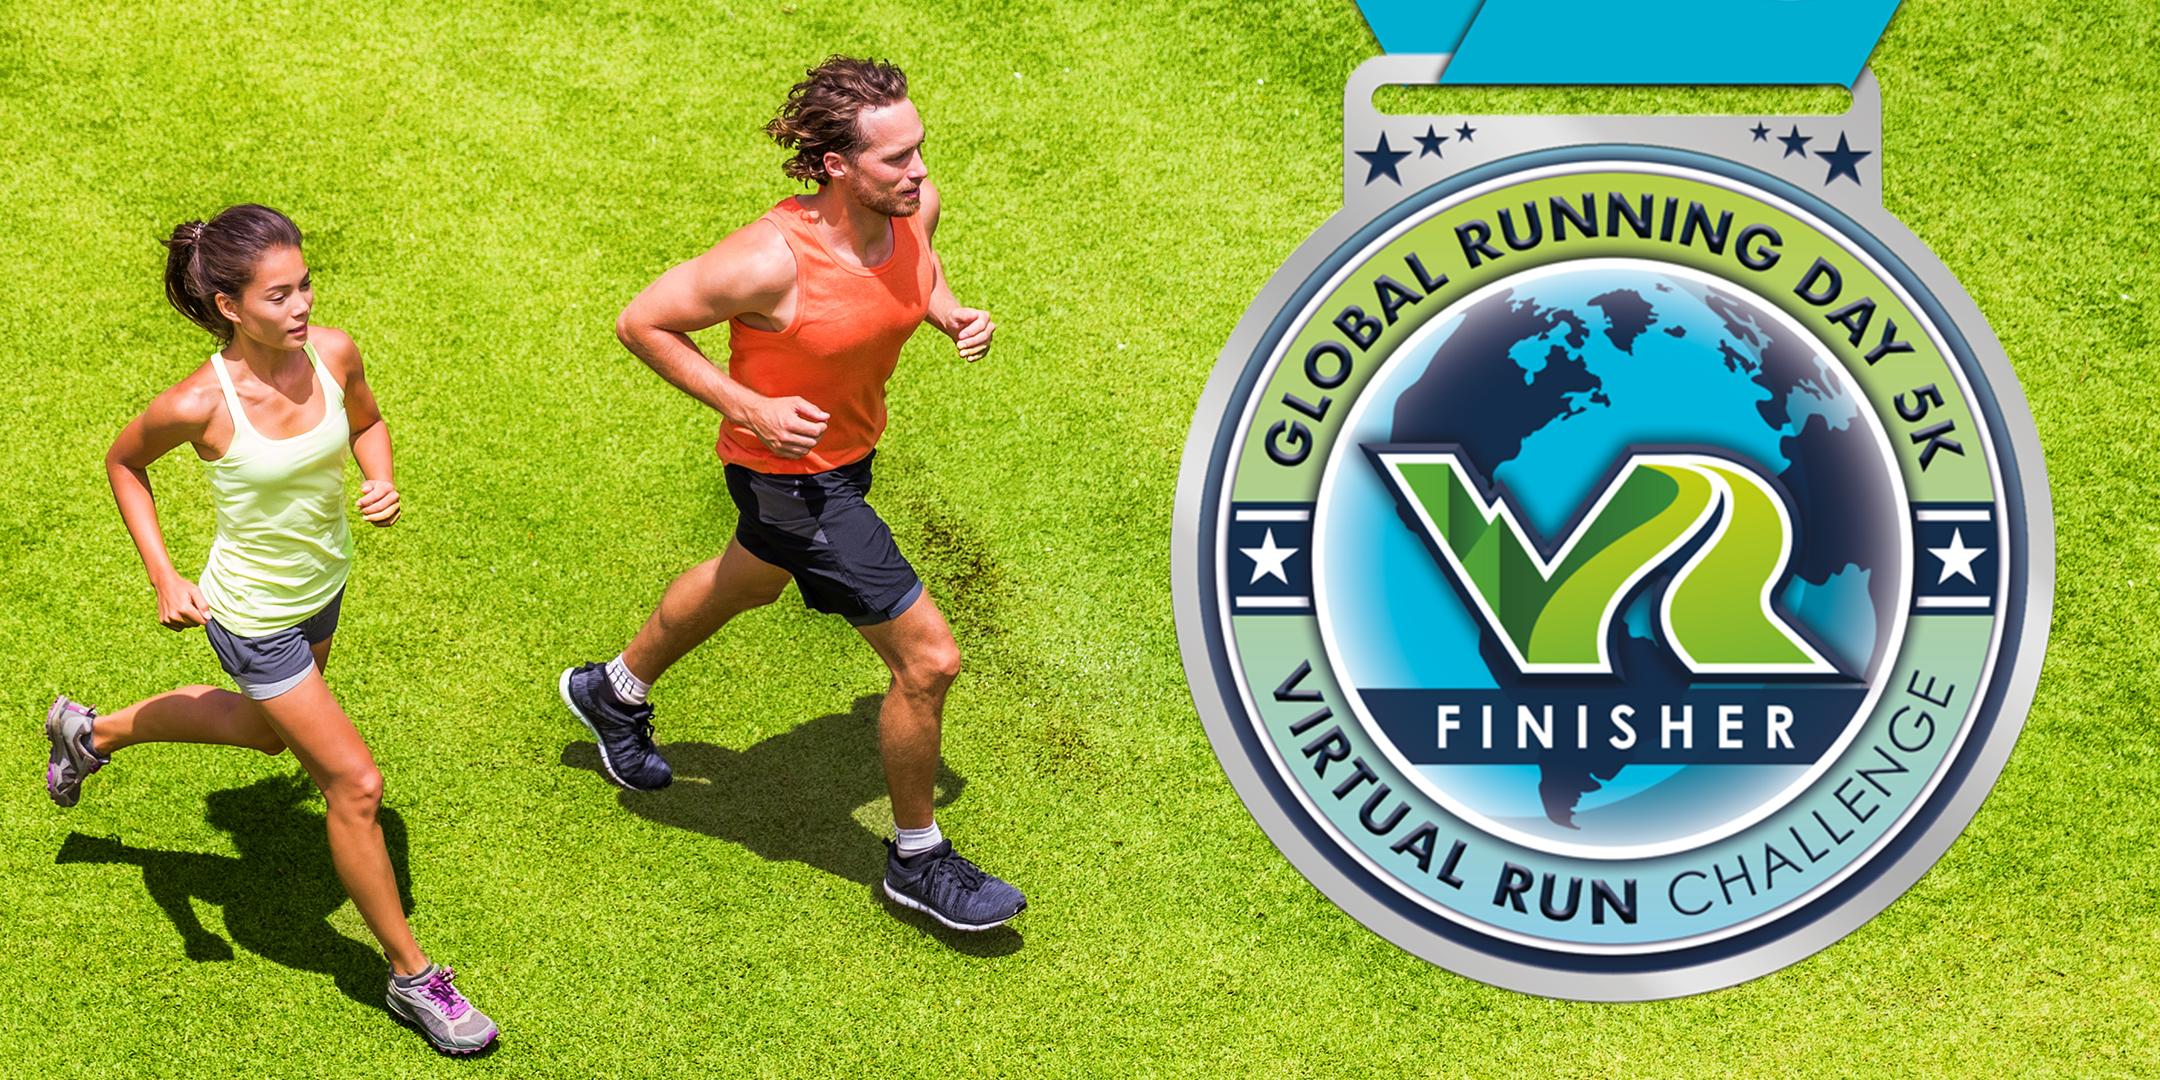 2020 Global Running Day Free Virtual 5k - Pasadena